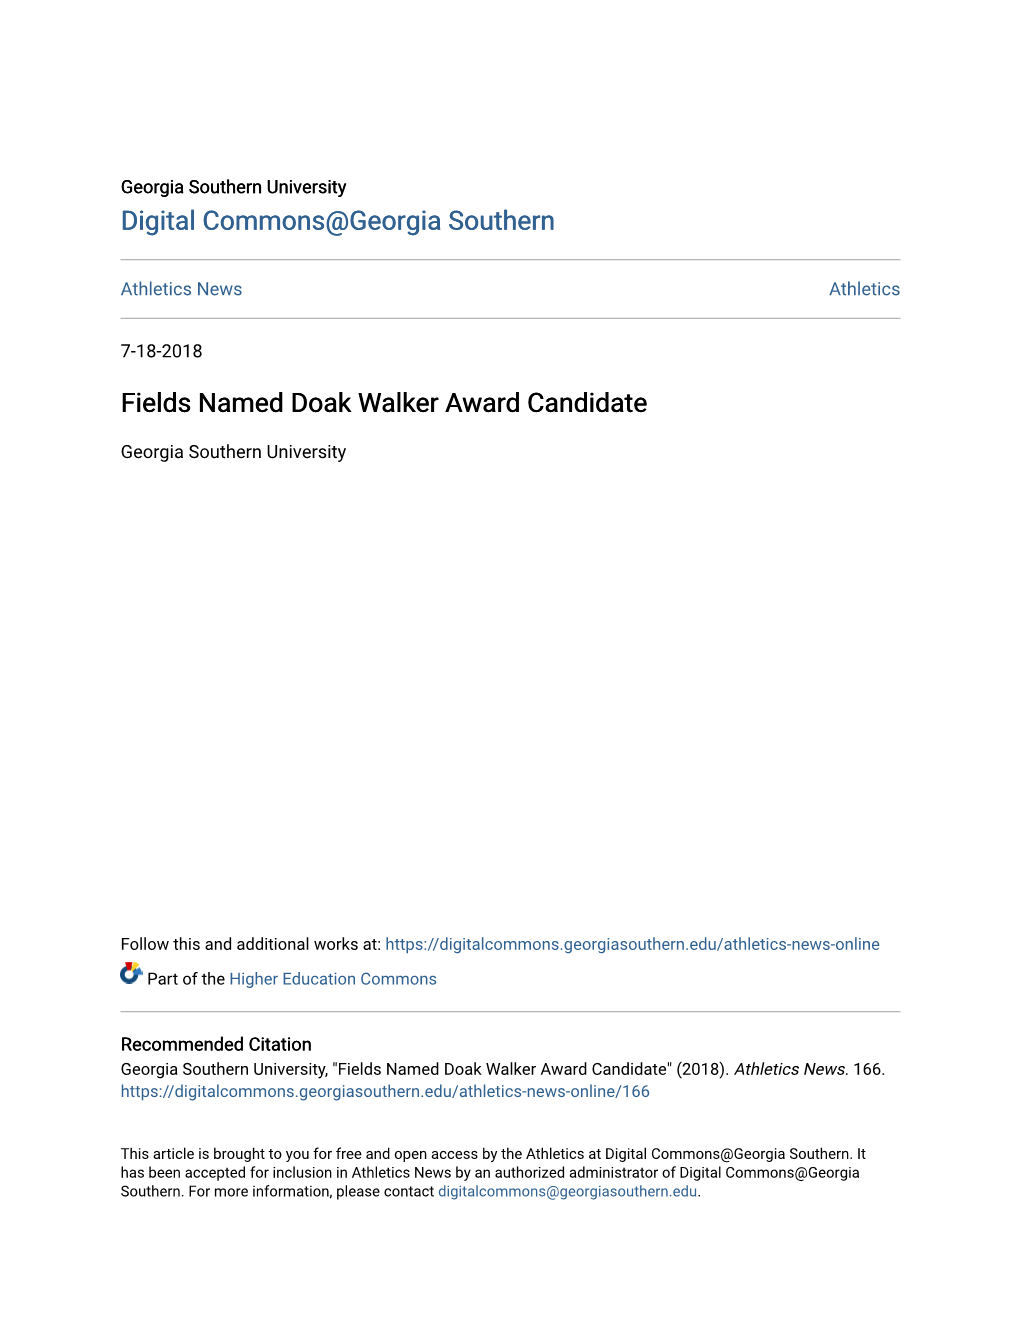 Fields Named Doak Walker Award Candidate